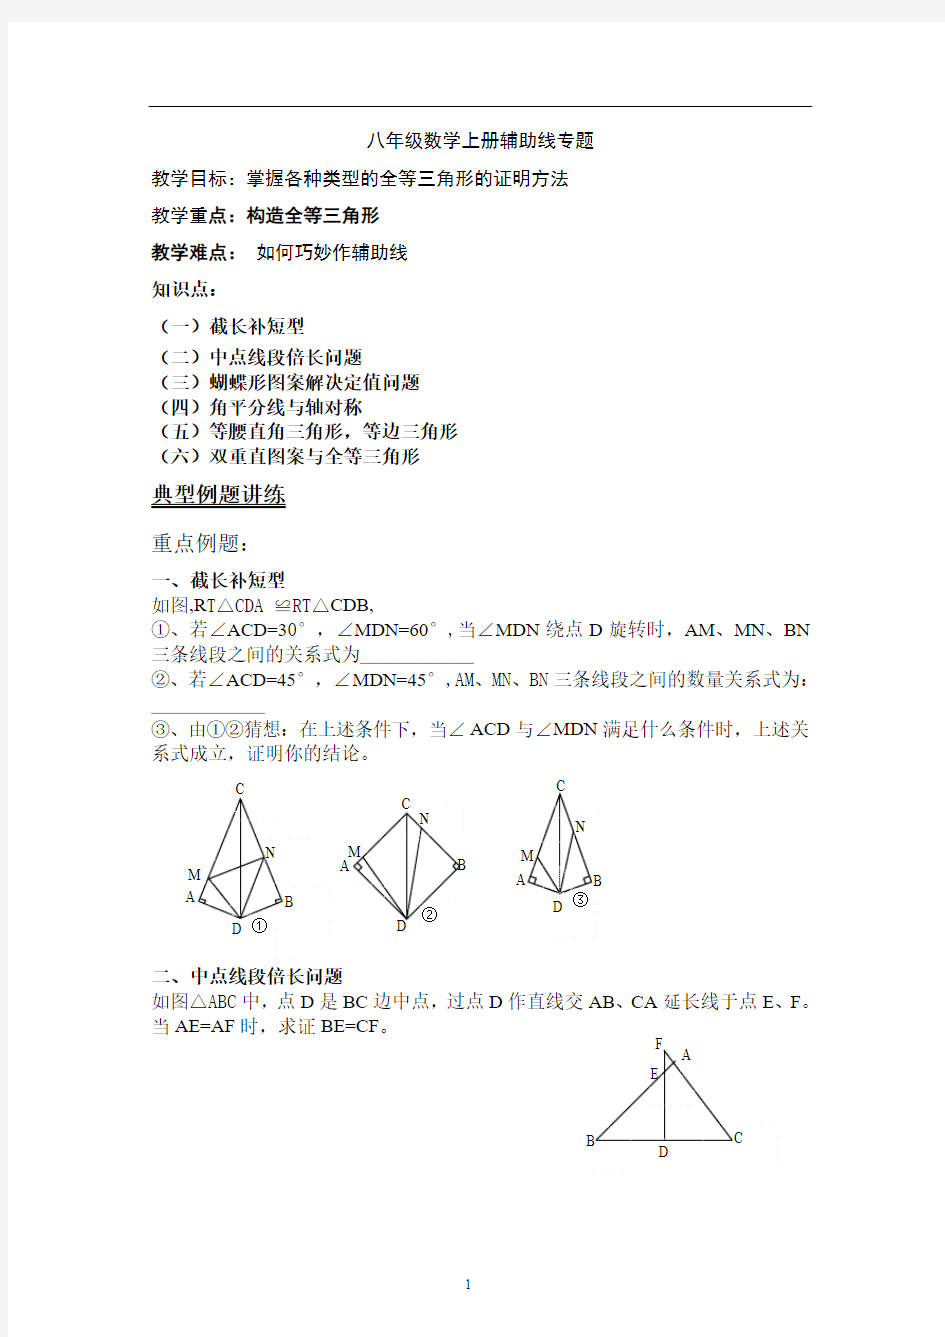 全等三角形辅助线专题 2